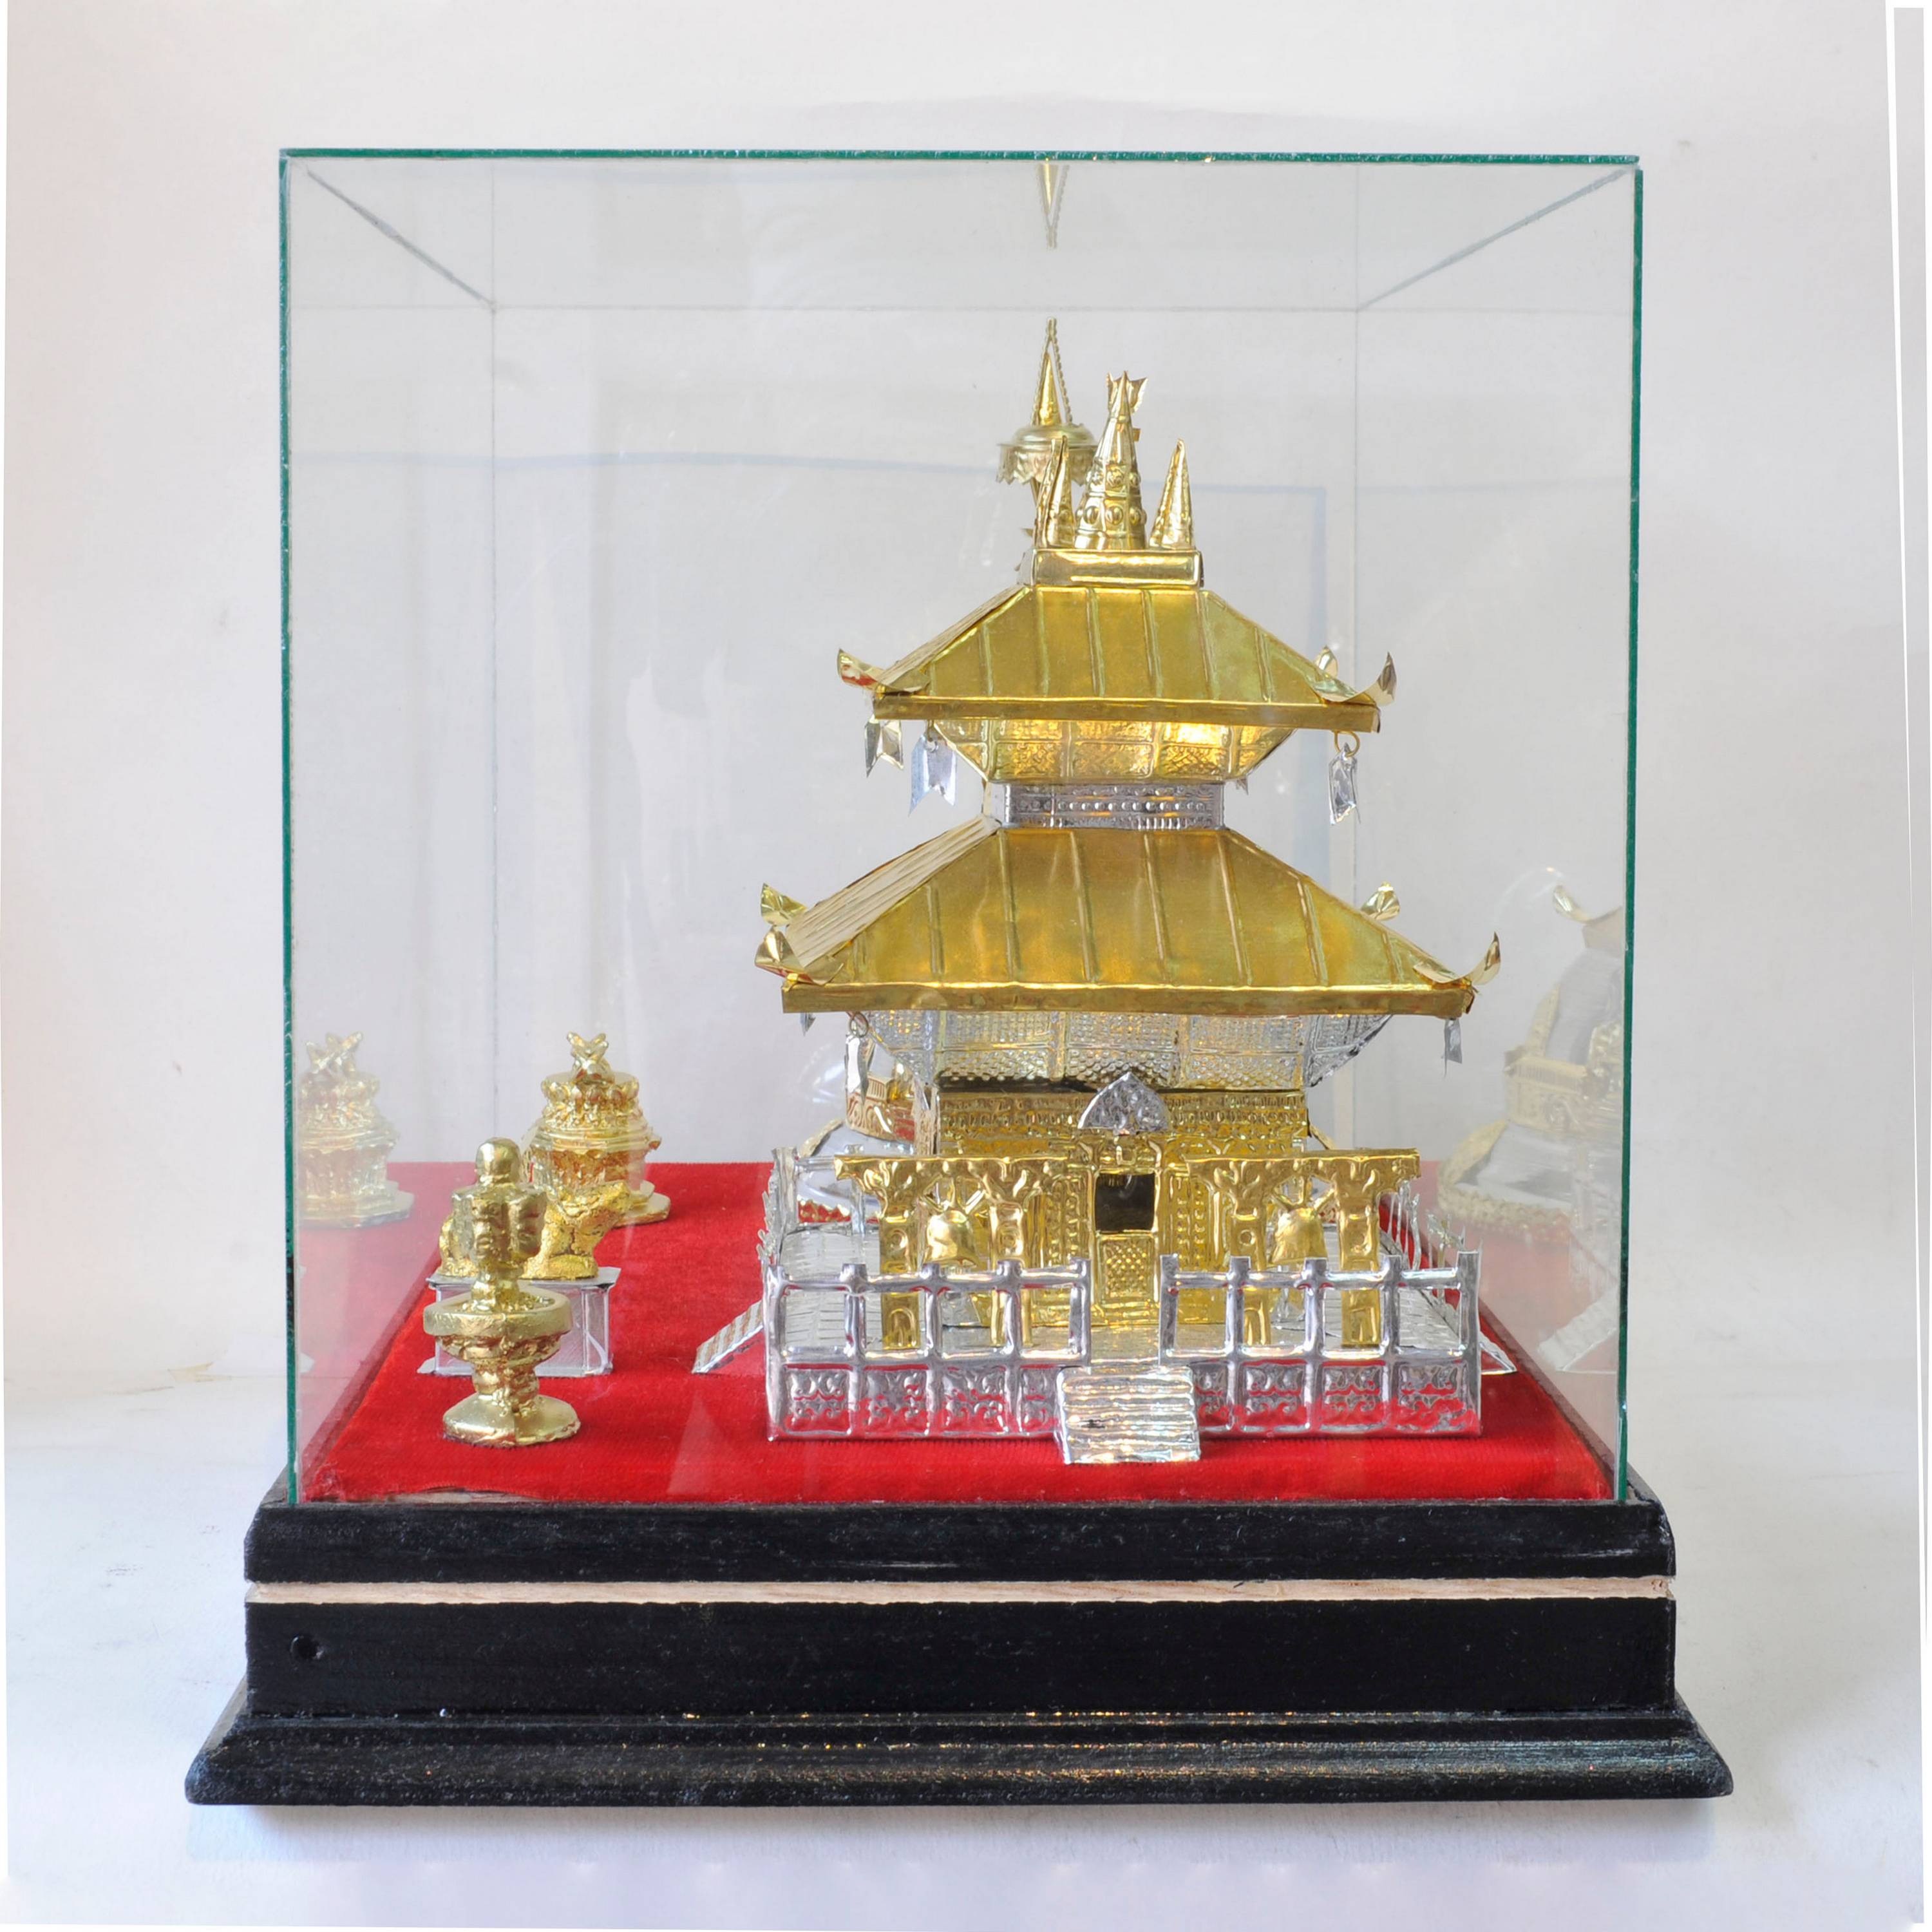 Traditional Handmade Nepali Gift Item Of swayambhunath Stupa And pashupatinath Temple Replica On Glass